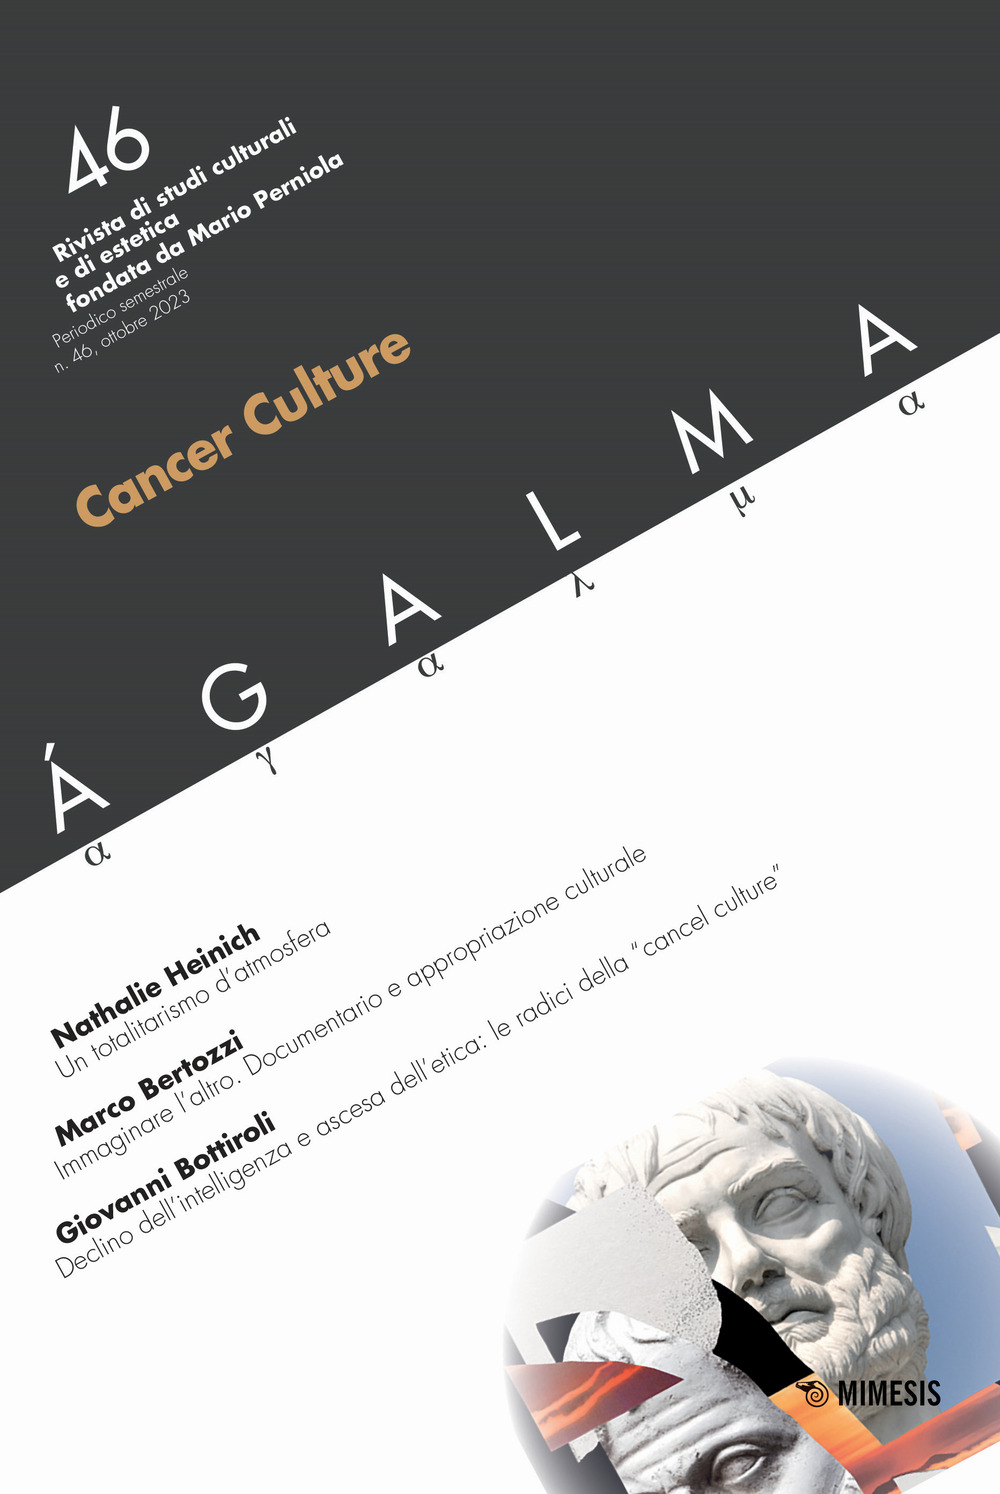 Ágalma. Vol. 46: Cancer culture